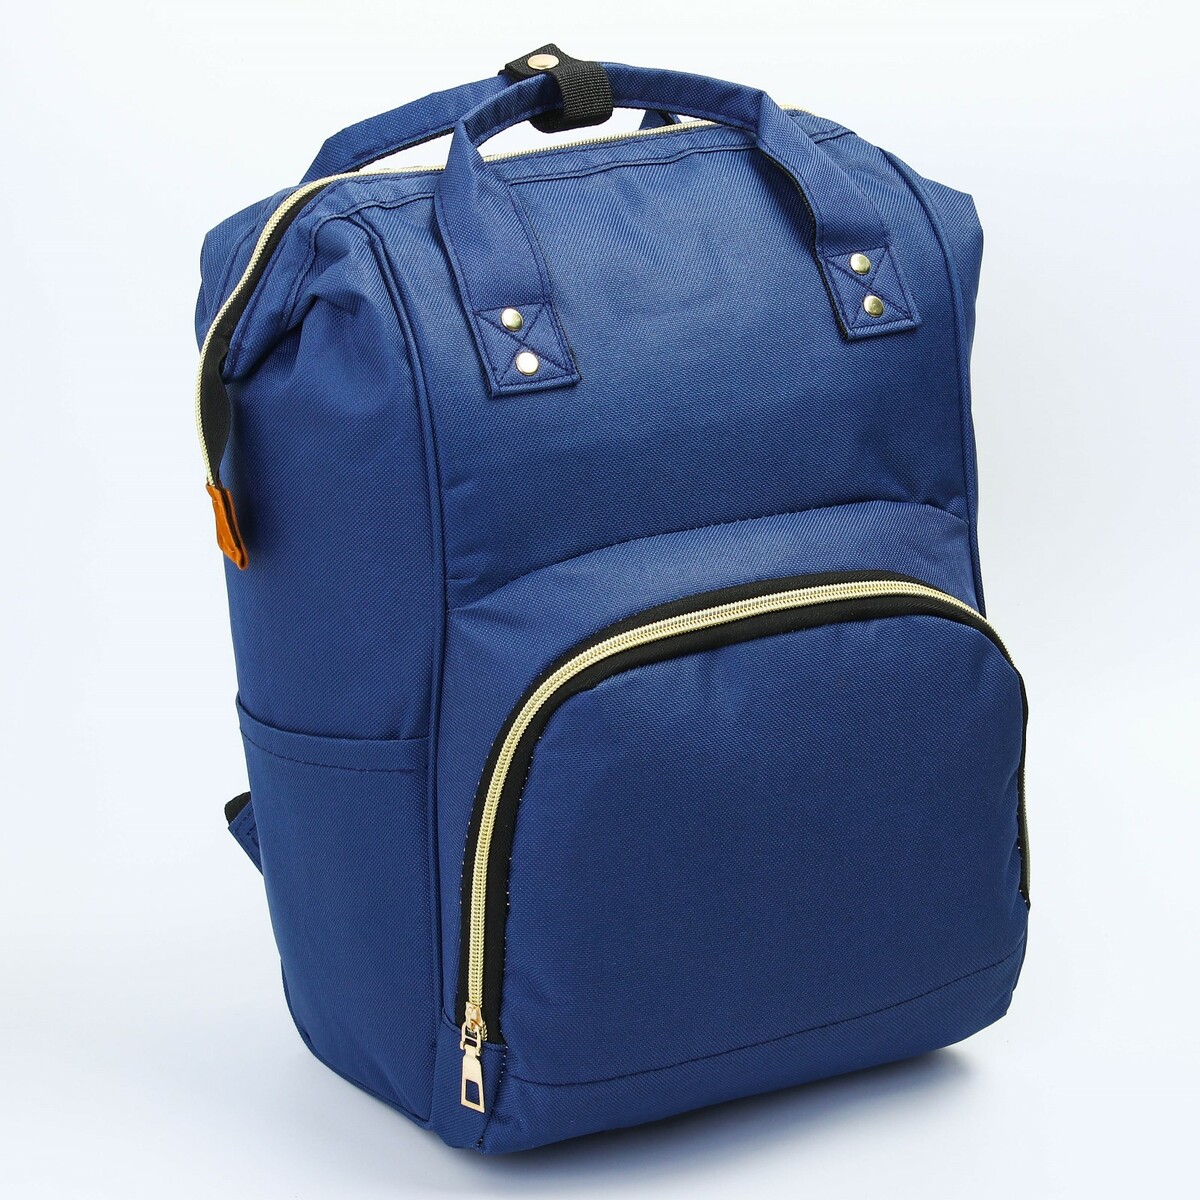 Рюкзак женский с термокарманом, термосумка - портфель, цвет синий рюкзак kingkong i 30 wb 9064 черн средний фоторюкзак